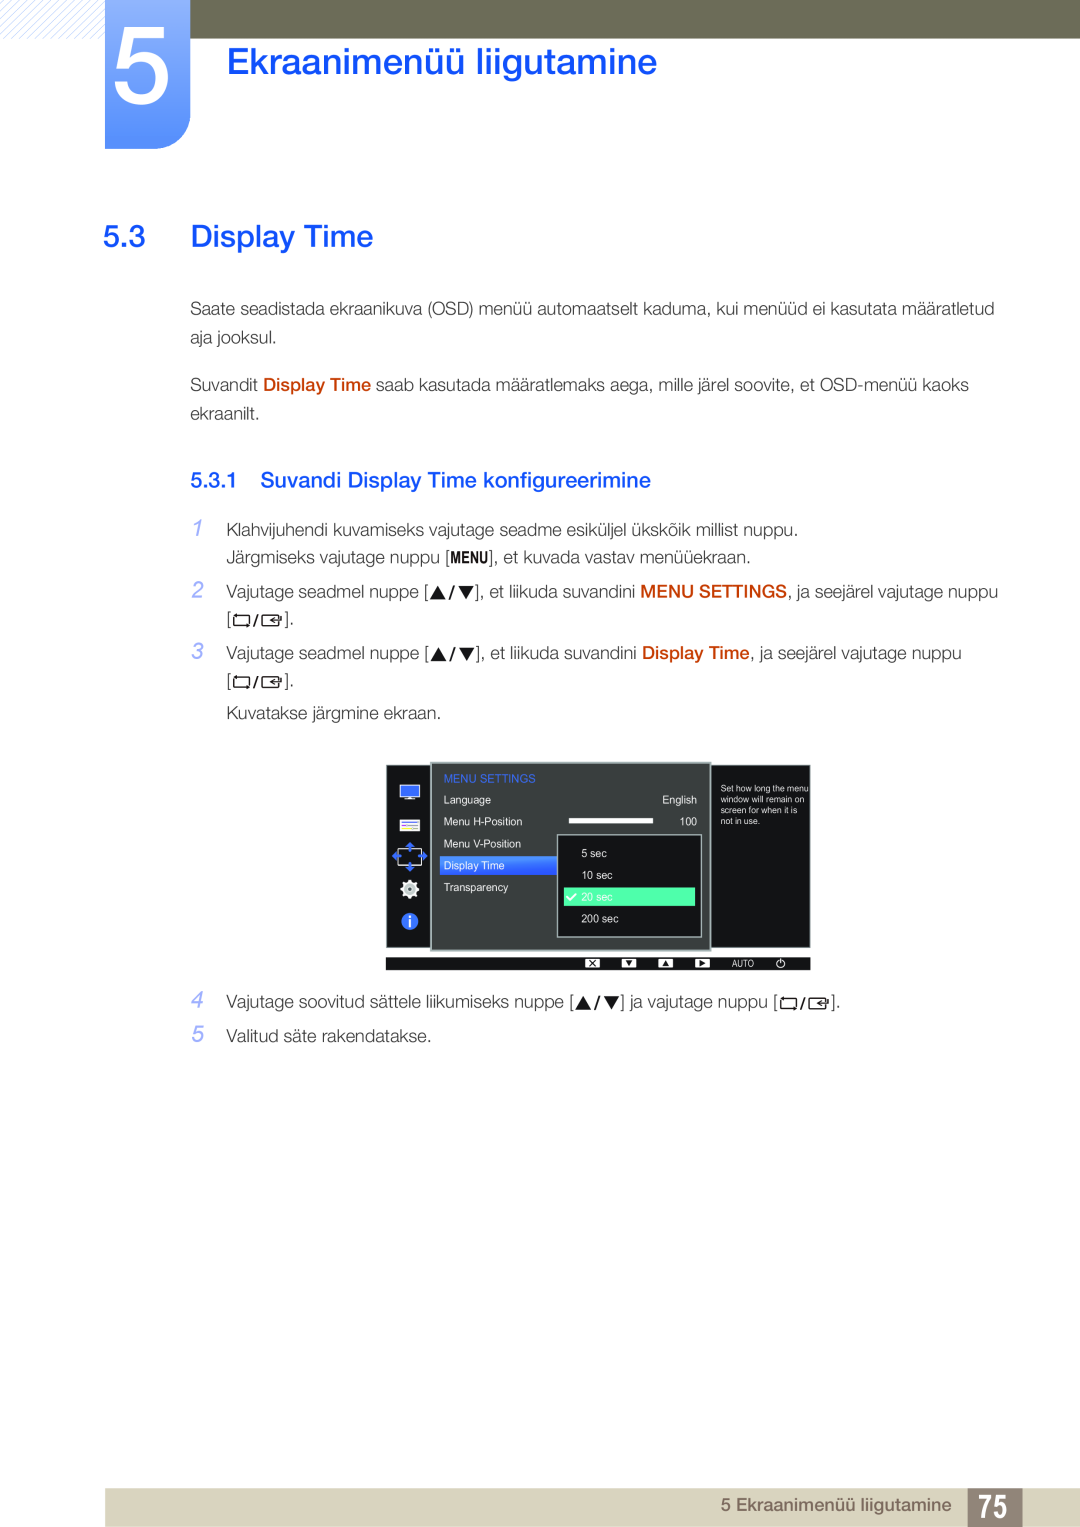 Samsung LS24D340HSX/EN, LS24D300HS/EN, LS22D300HY/EN Suvandi Display Time konfigureerimine, Ekraanimenüü liigutamine 